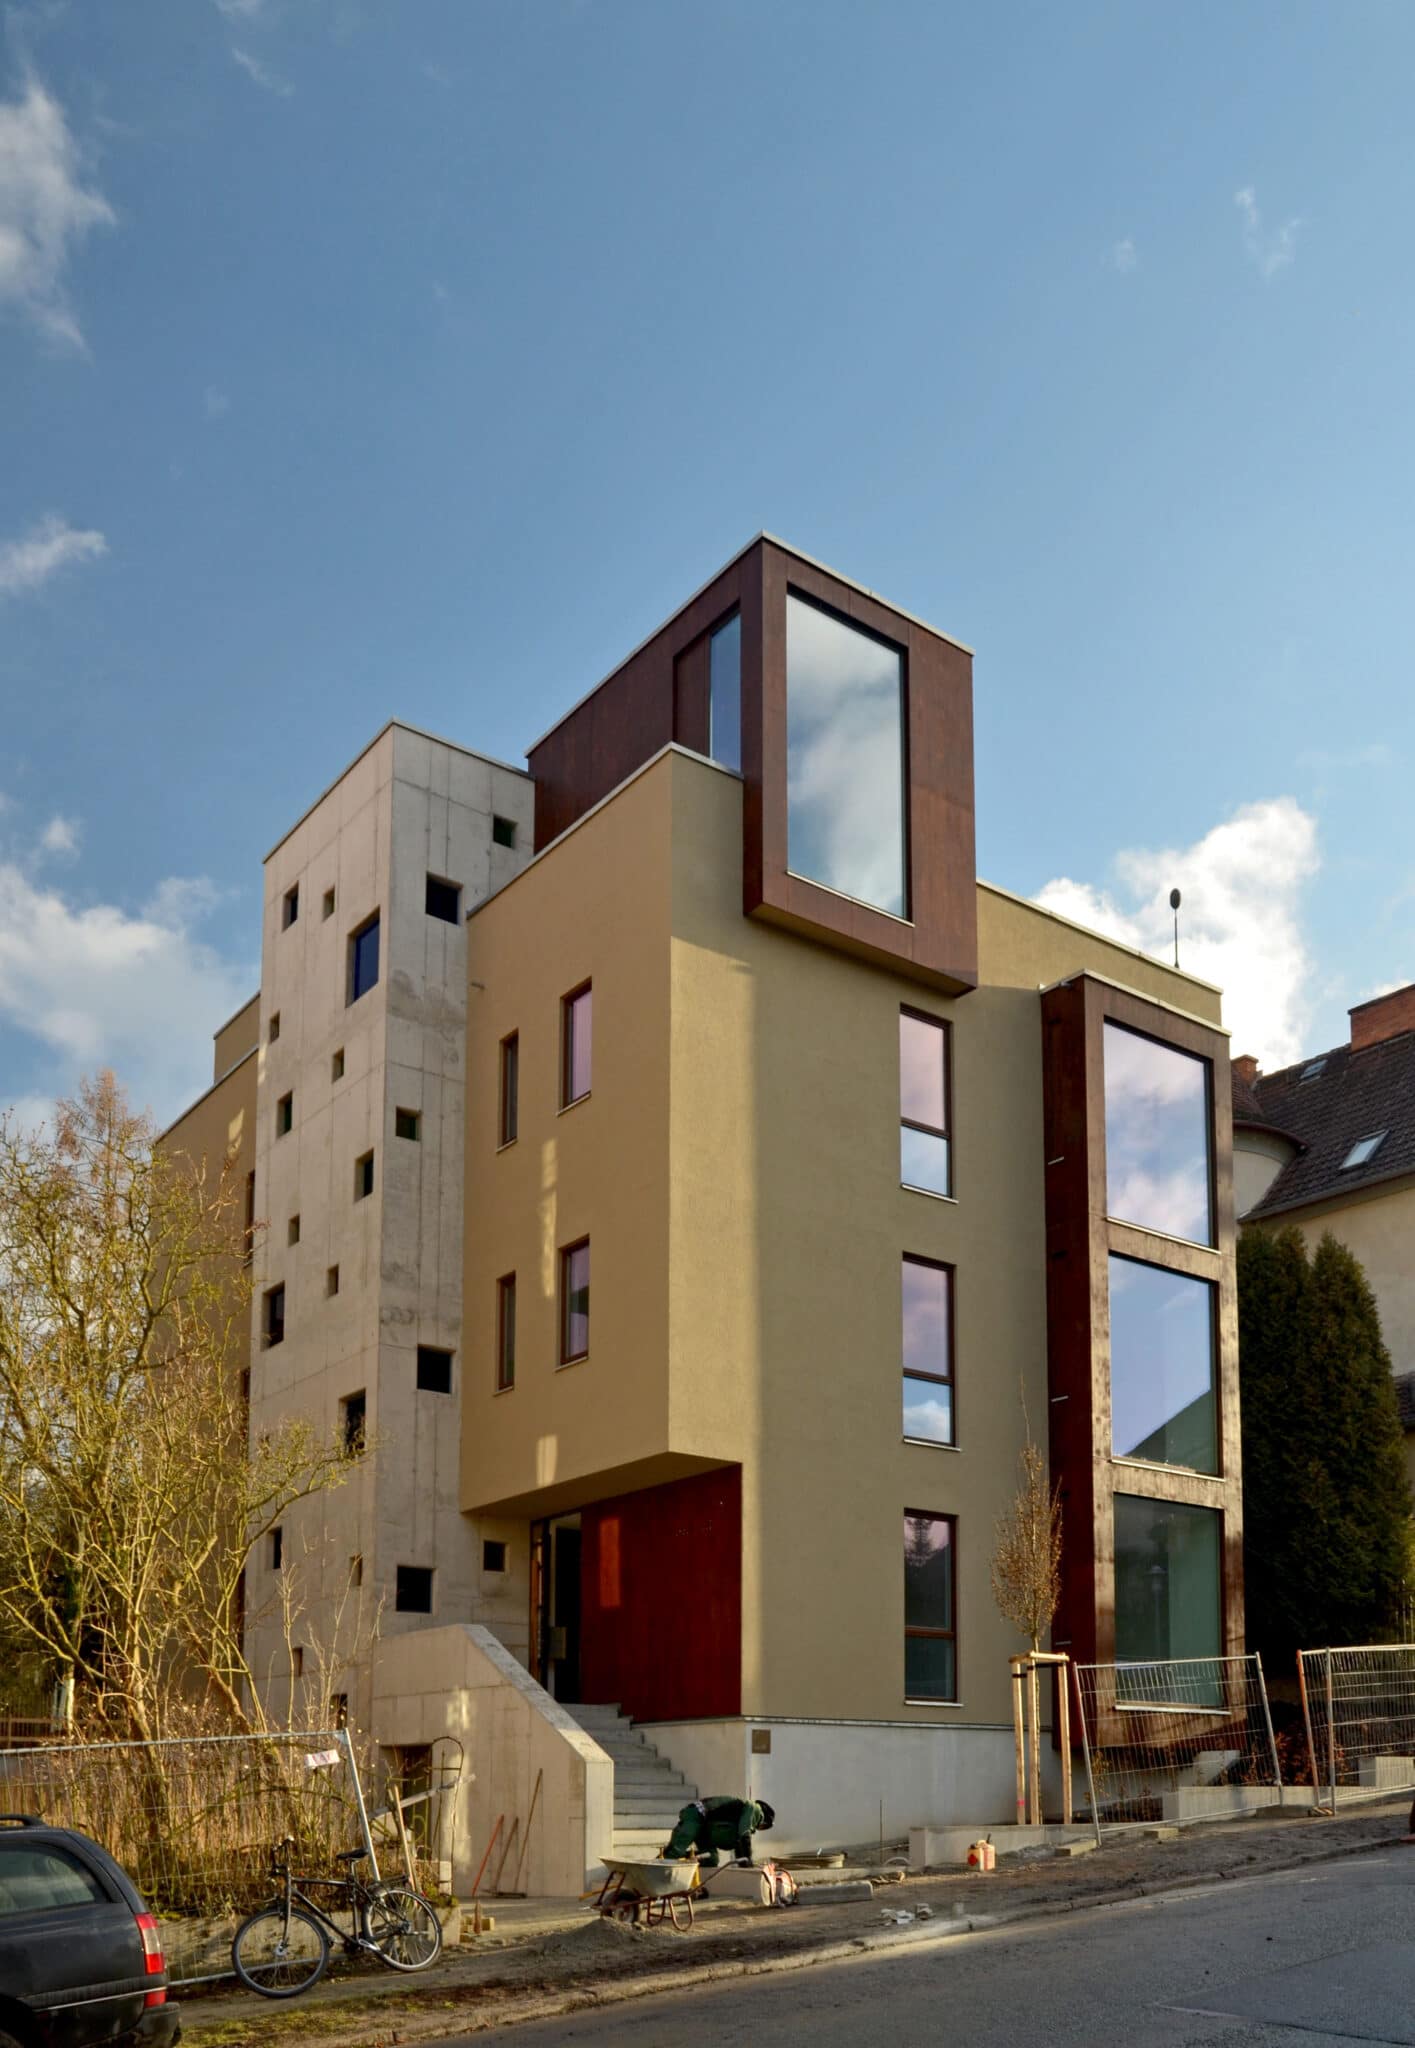 Hochwertiger
Wohnraum,
Nachverdichtung
als
Holzrahmenbau
auf
vier
Ebenen,
durchgängig
in
Holz.
(Bilder:
Jörg
Bleicher)